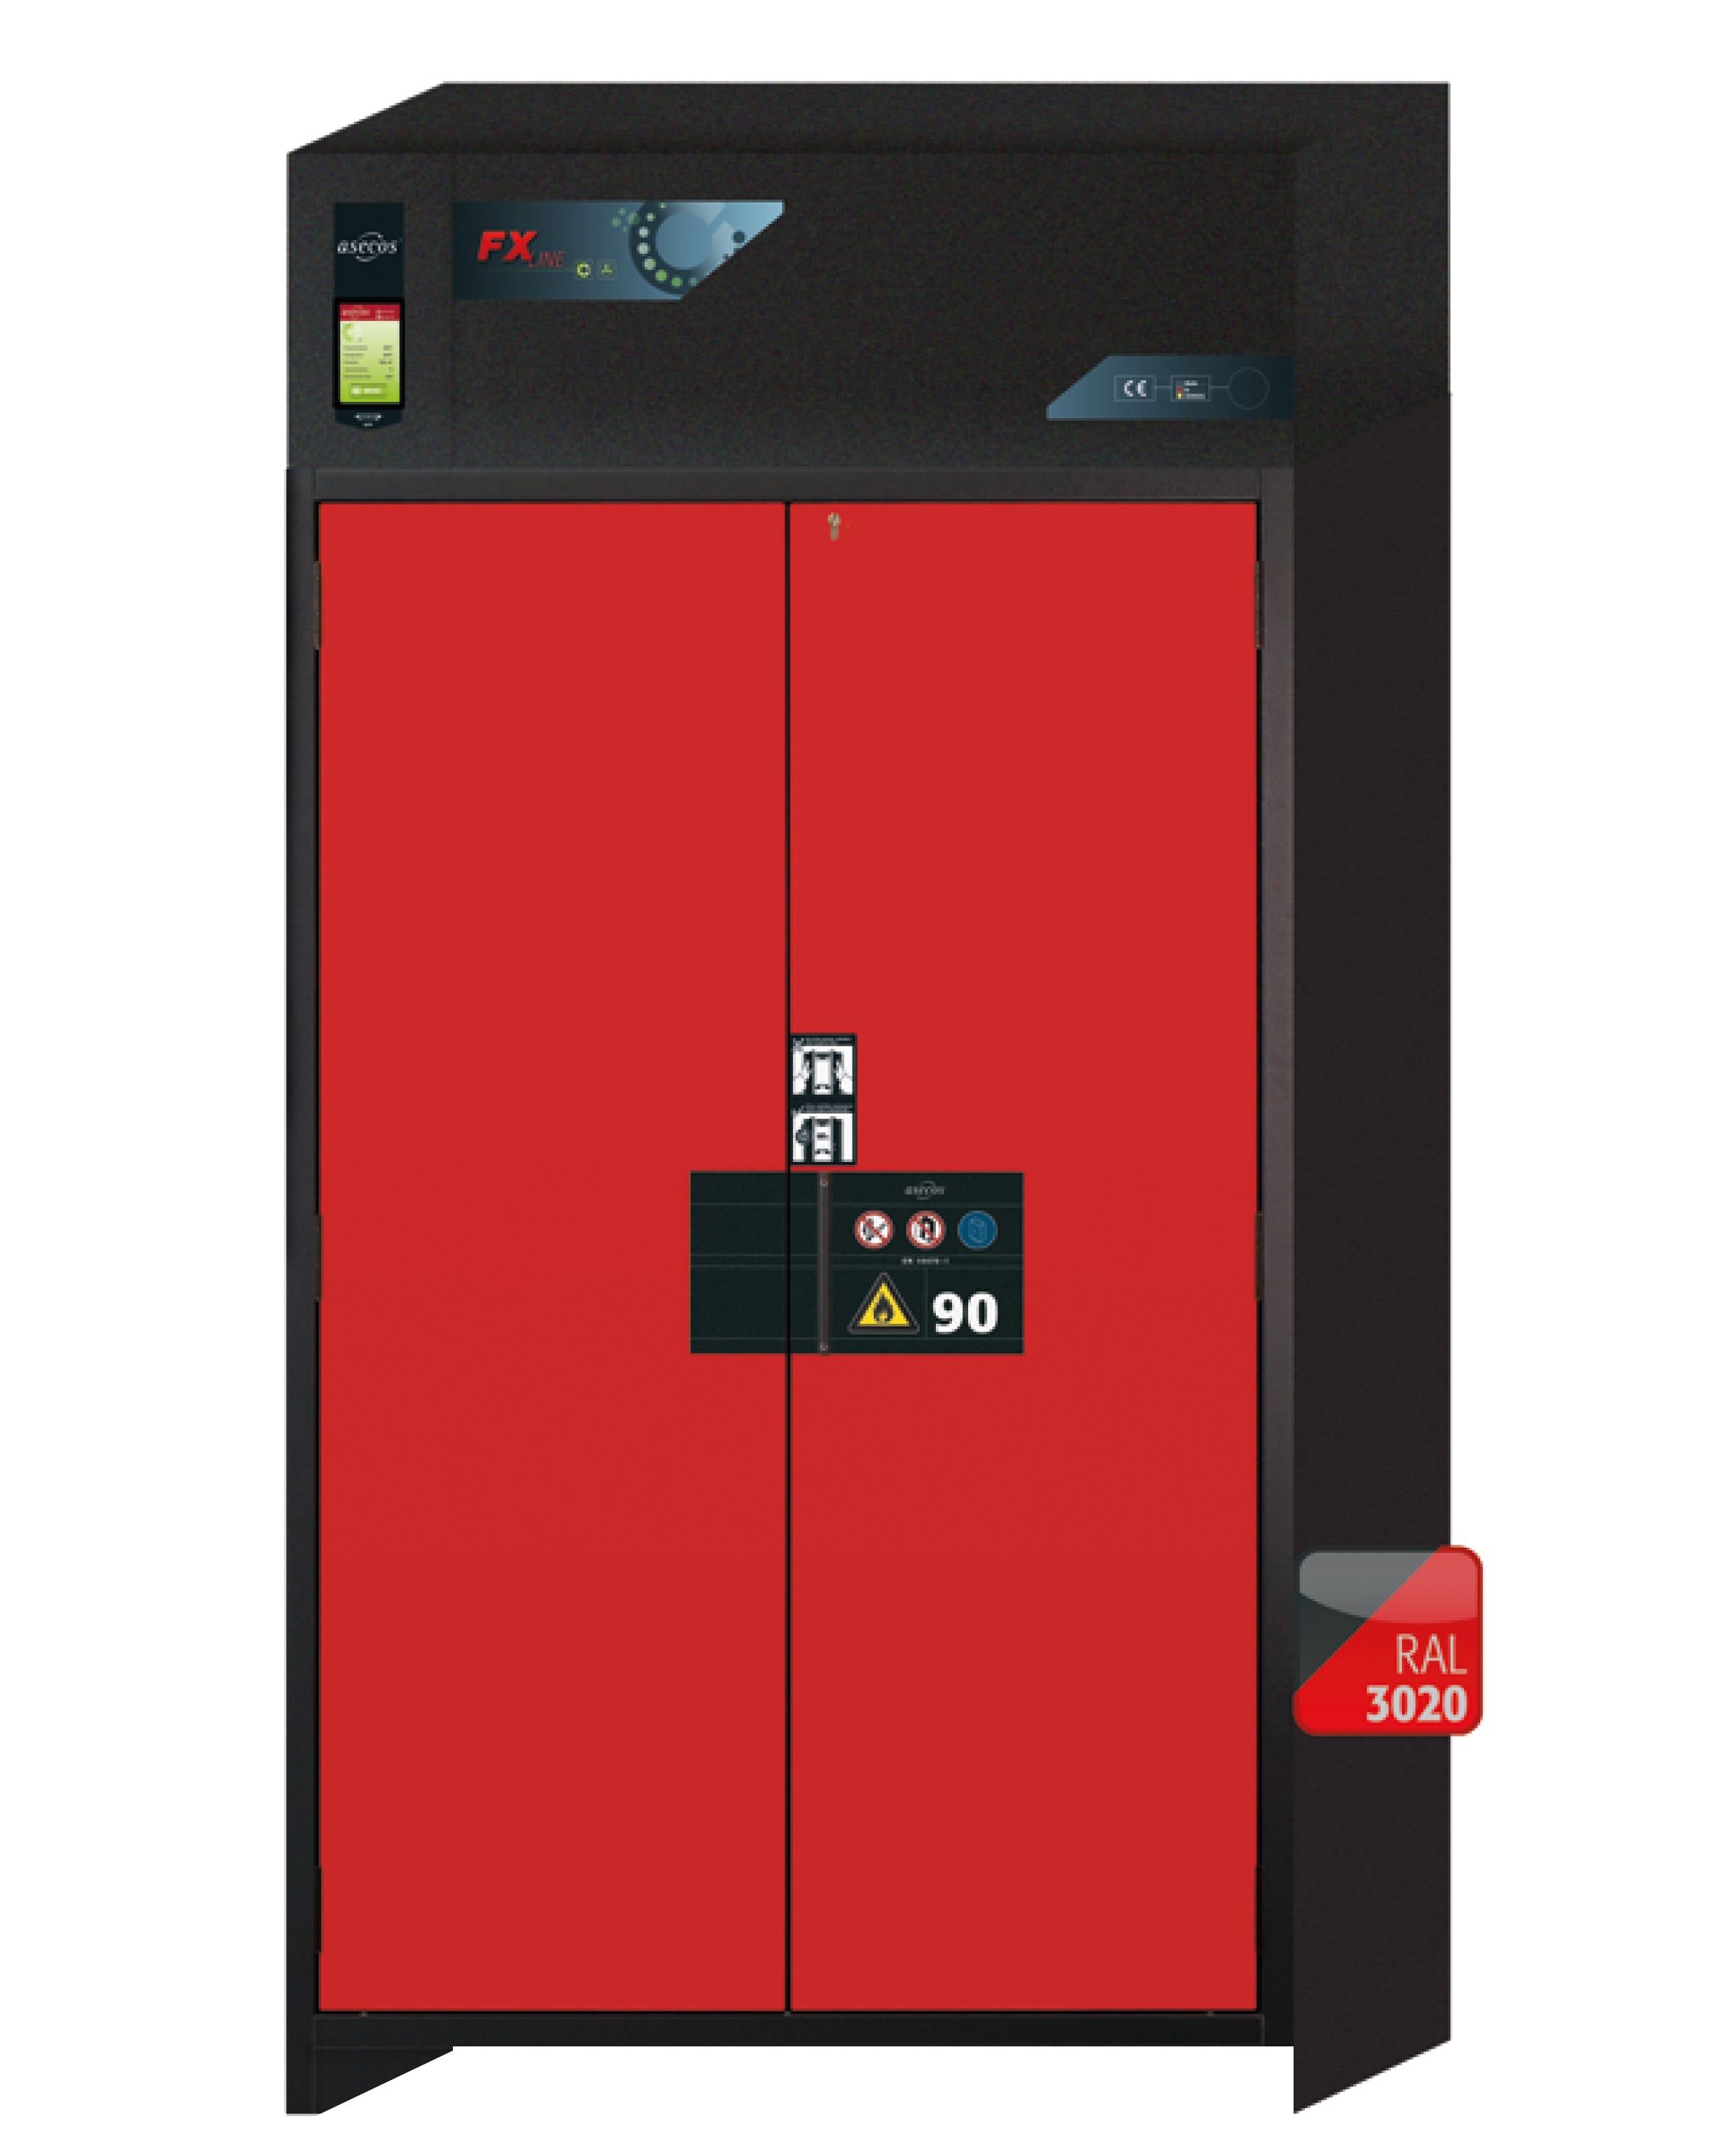 Armoire de filtration d'air recyclé type 90 FX-PEGASUS-90 modèle FX90.229.120.WDAC en rouge signalisation RAL 3020 avec 6 plateaux coulissants standard (tôle d'acier)